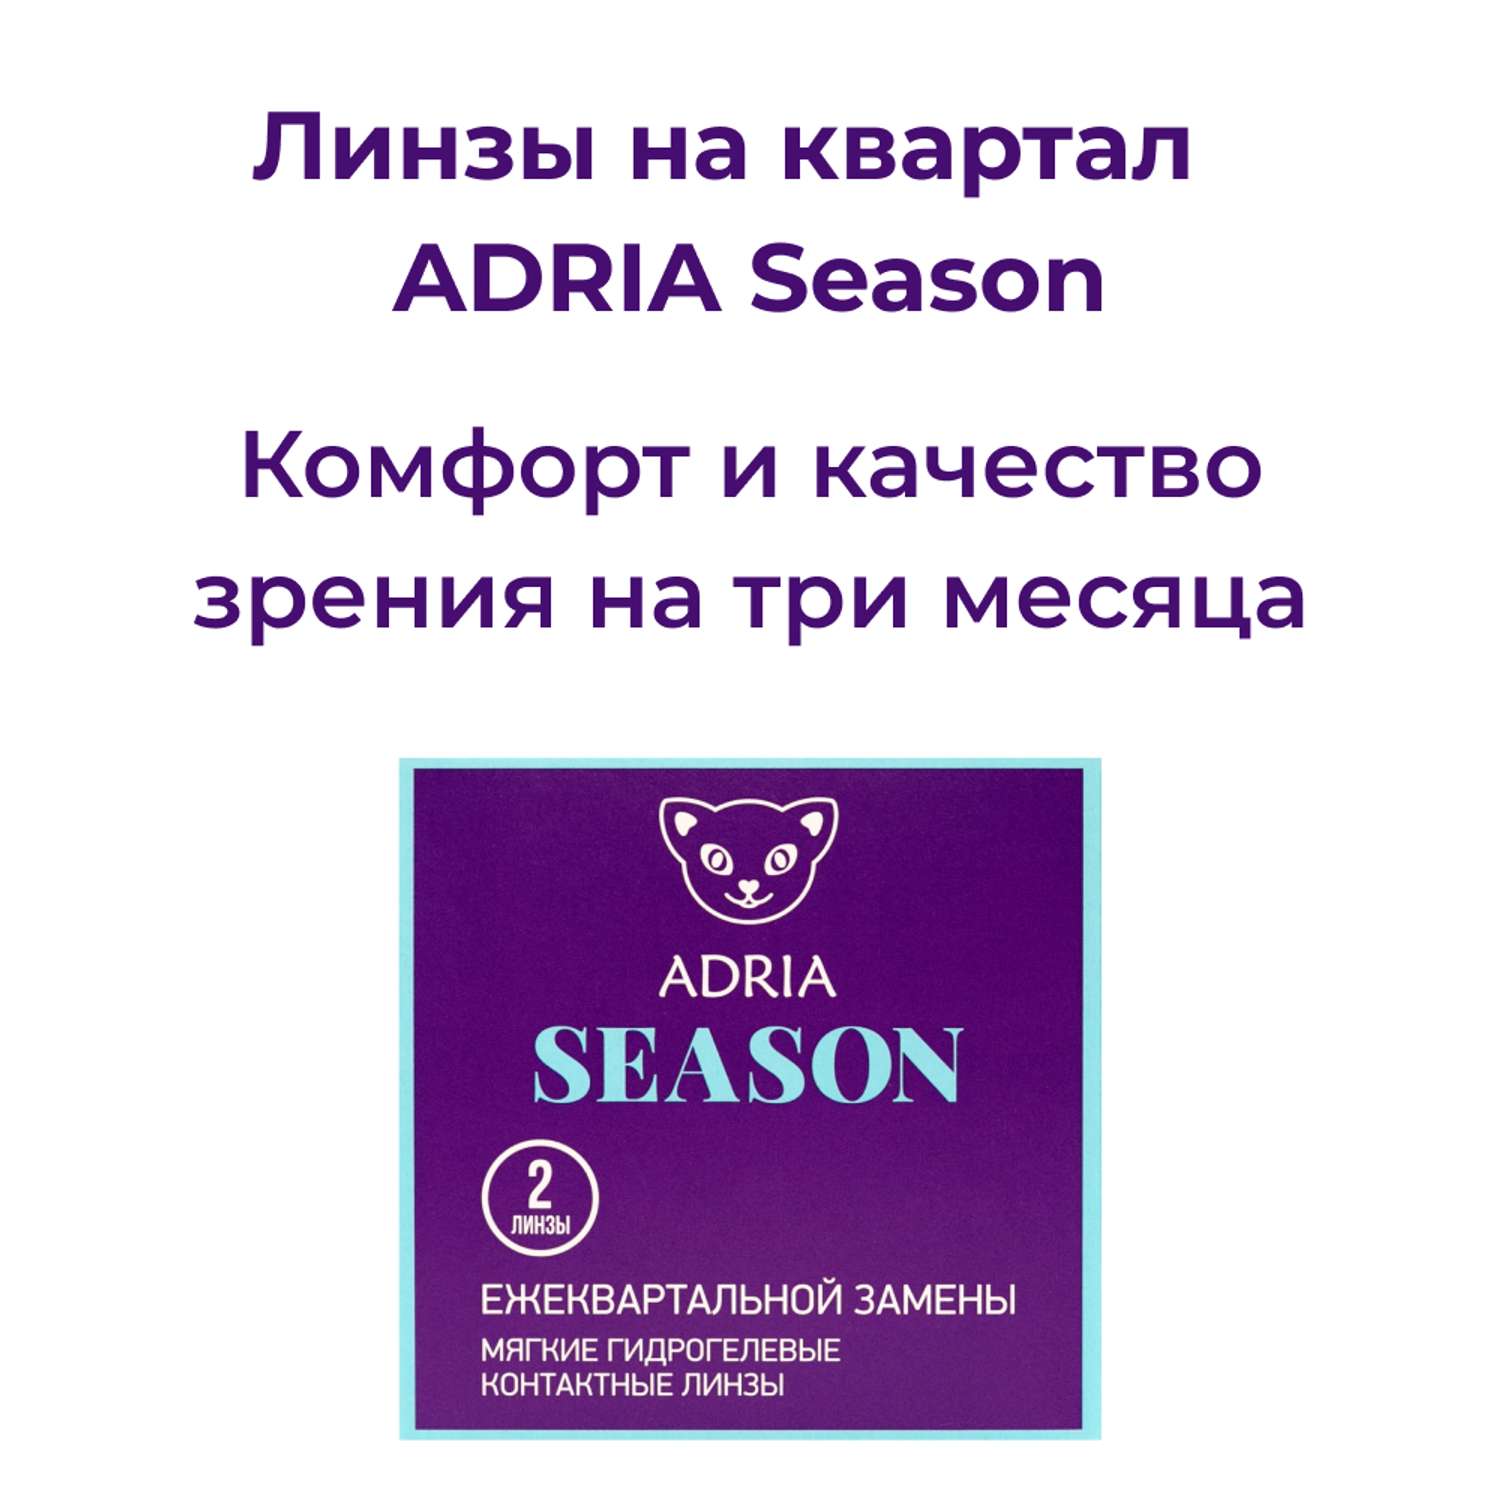 Контактные линзы ADRIA Season 2 линзы R 8.6 -3.75 - фото 2